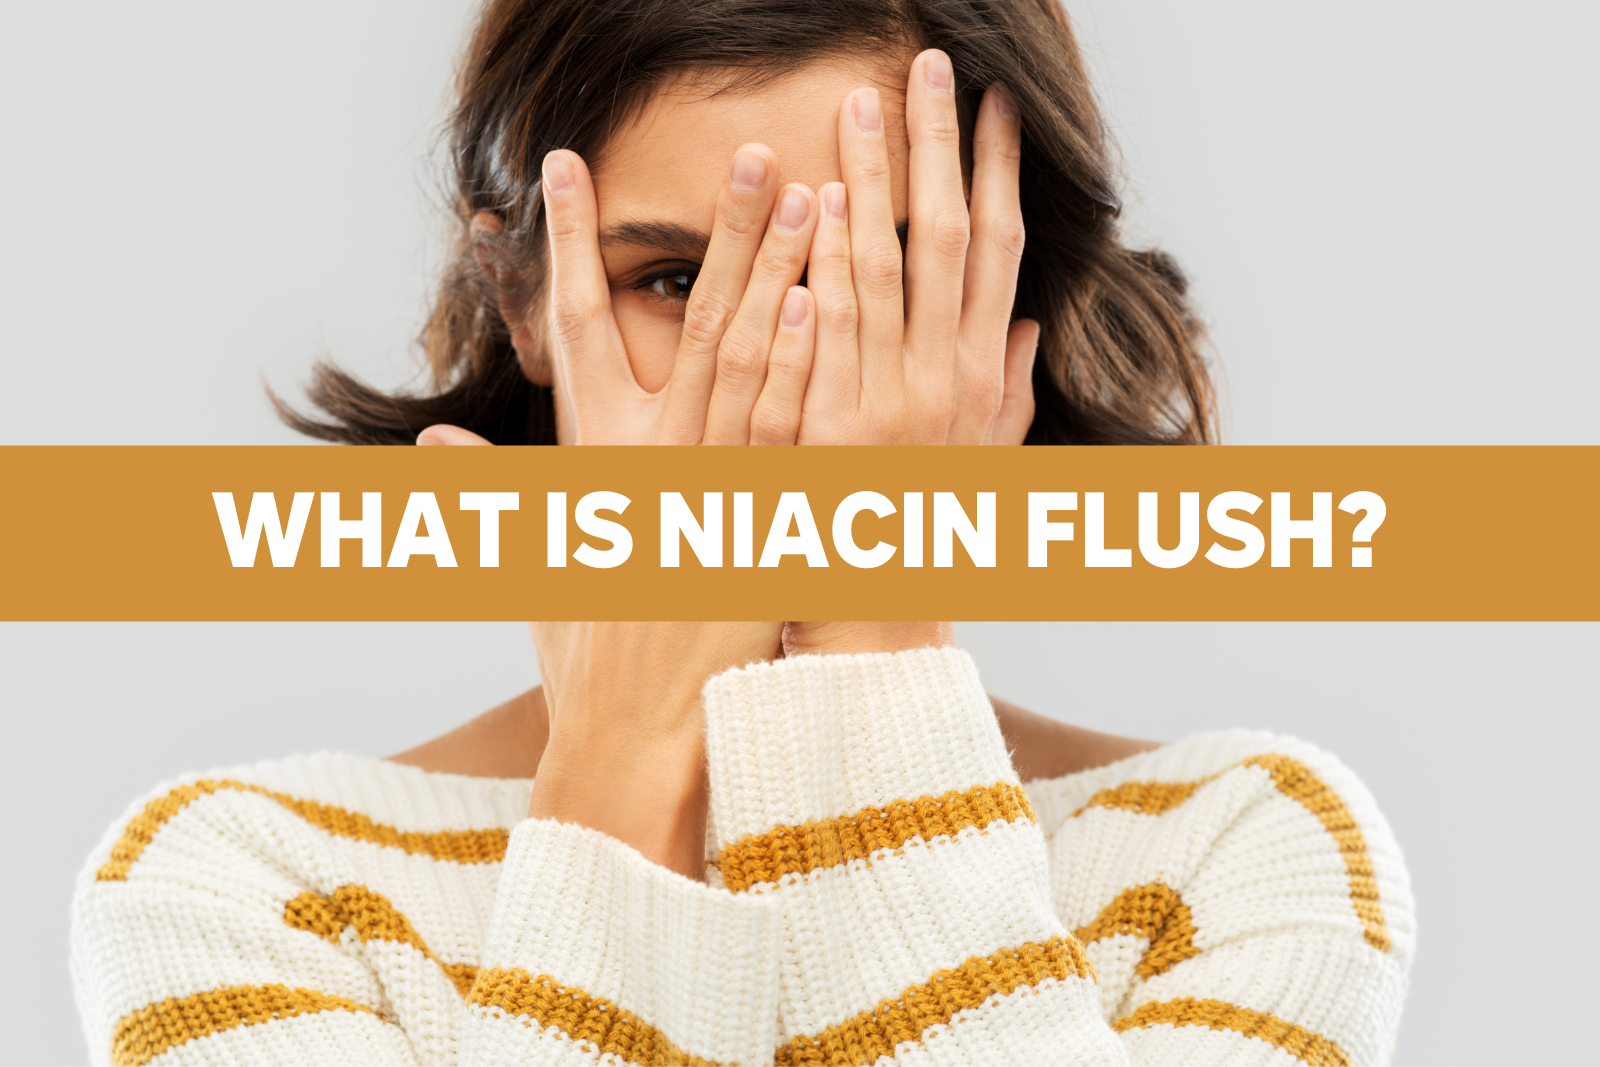 Niacin Flush: Harmful or Helpful?